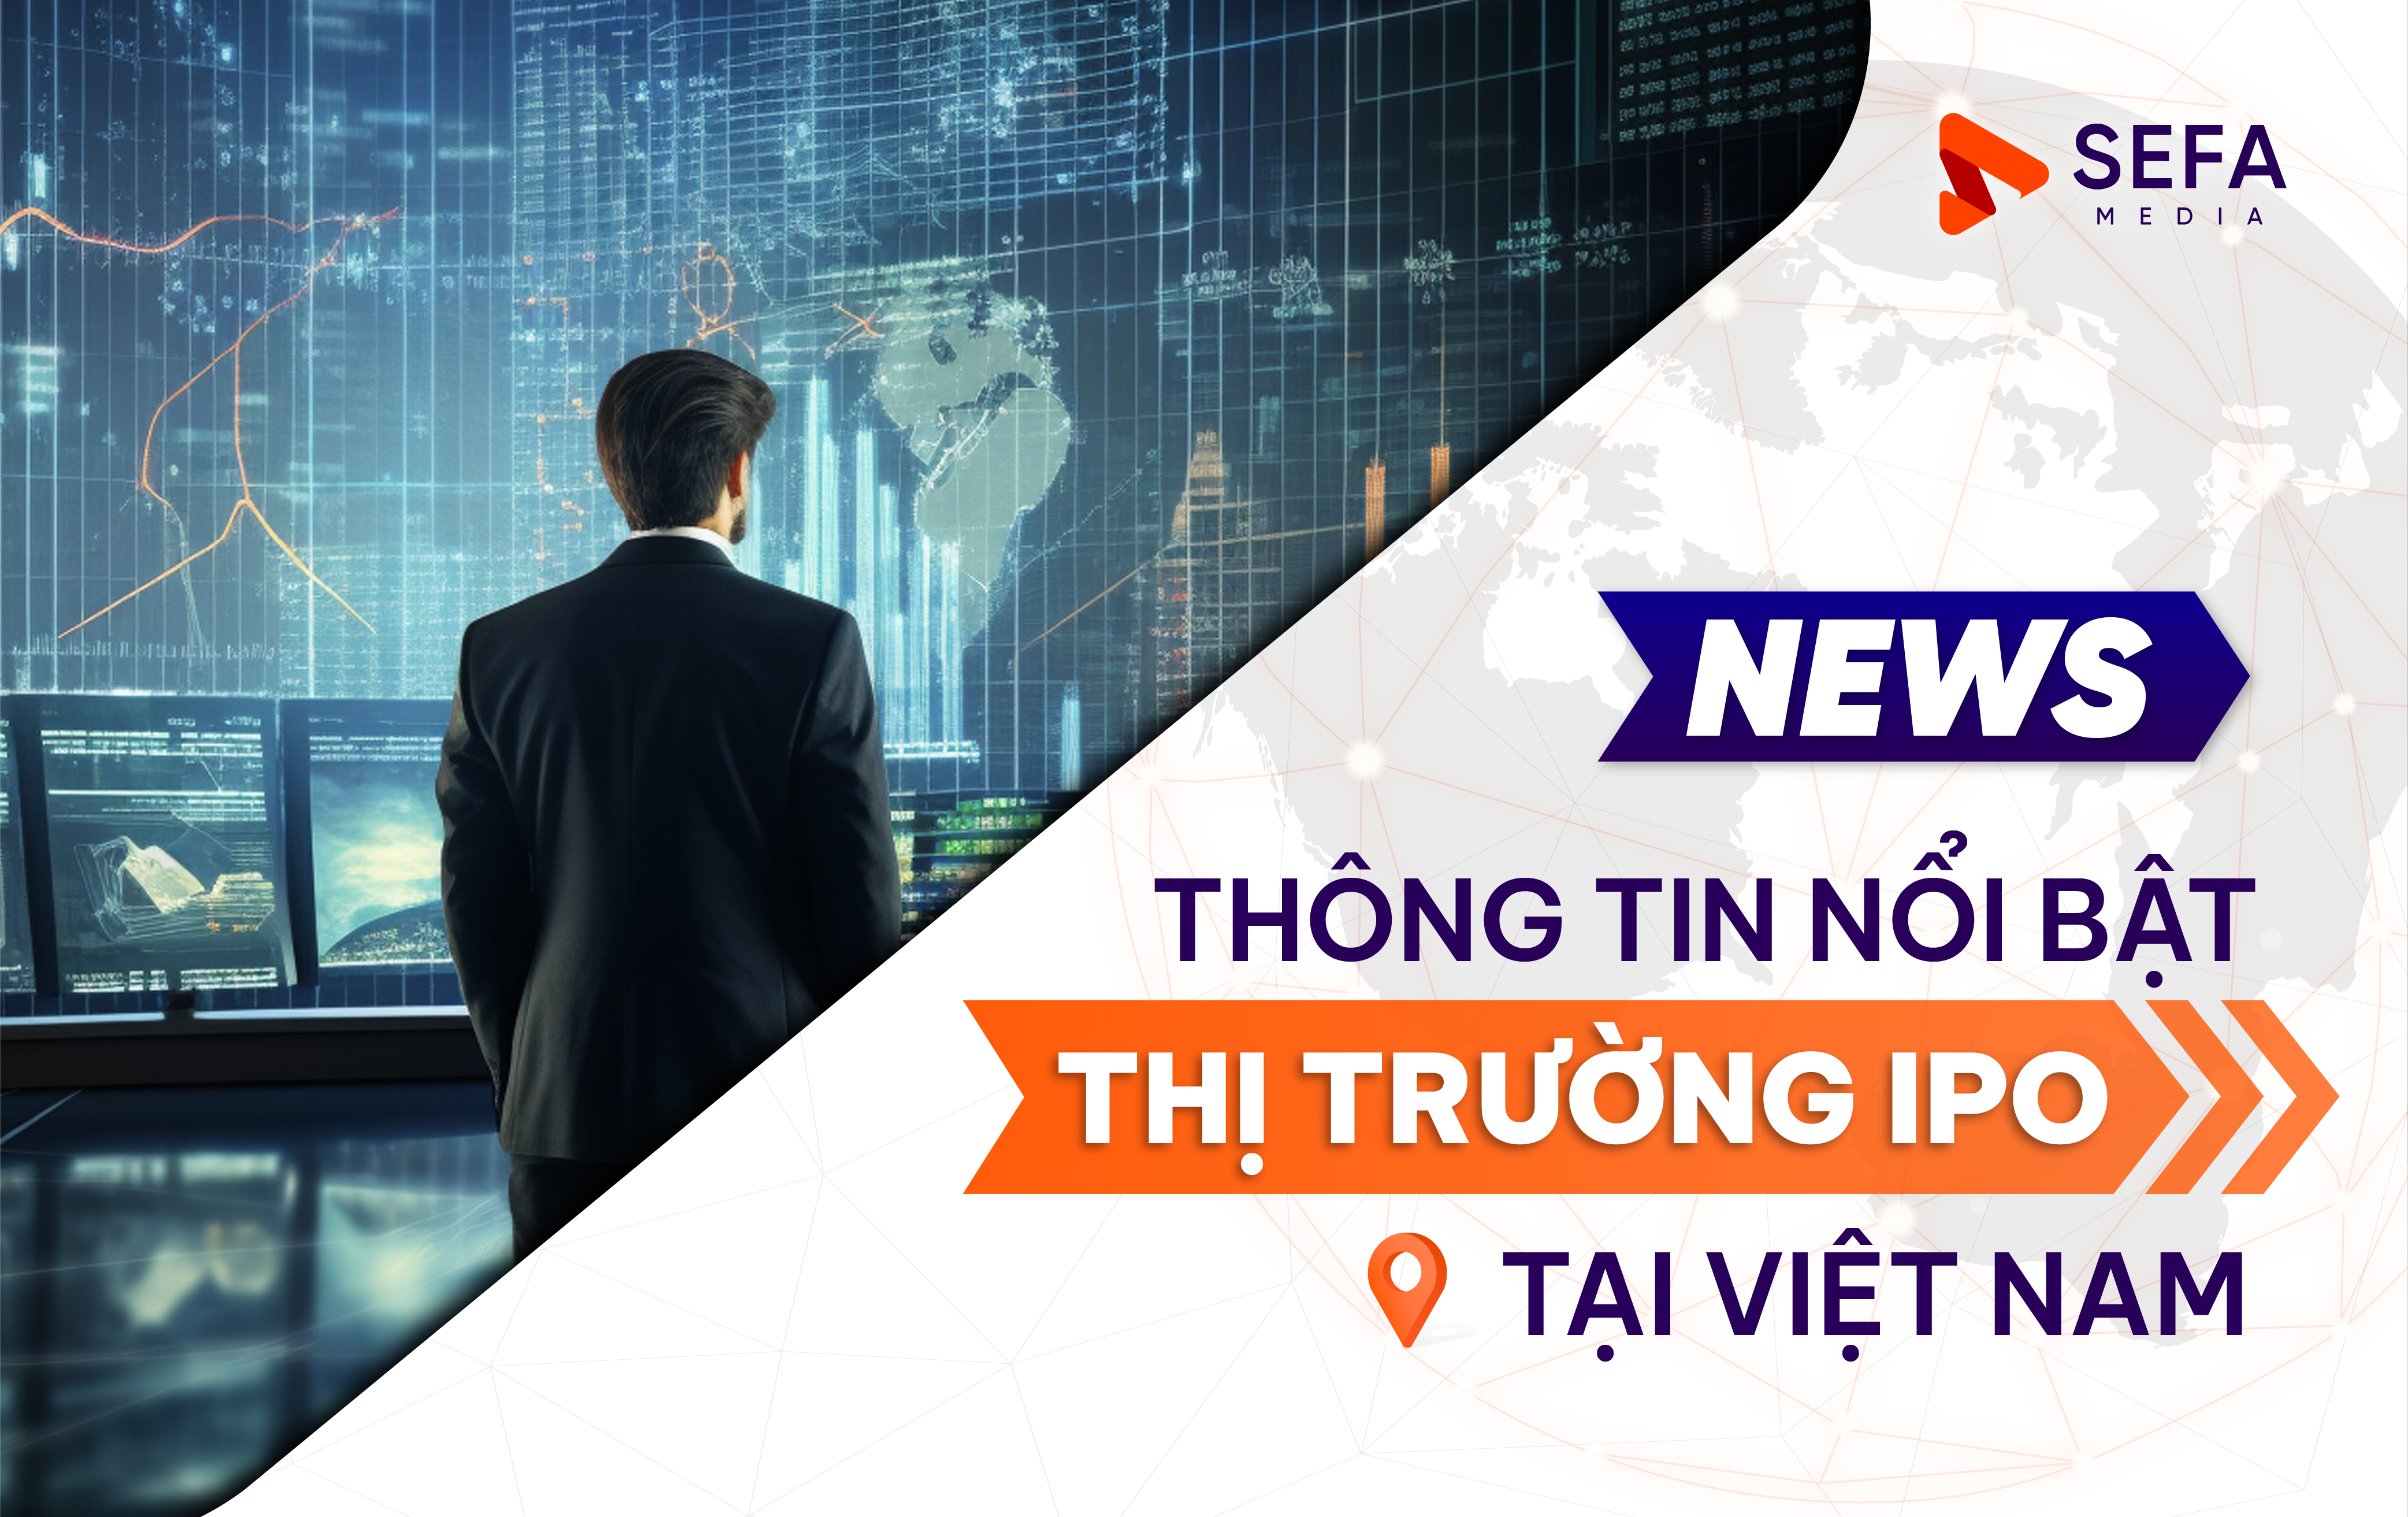 Cập nhật thông tin nổi bật nhất từ thị trường IPO tại Việt Nam